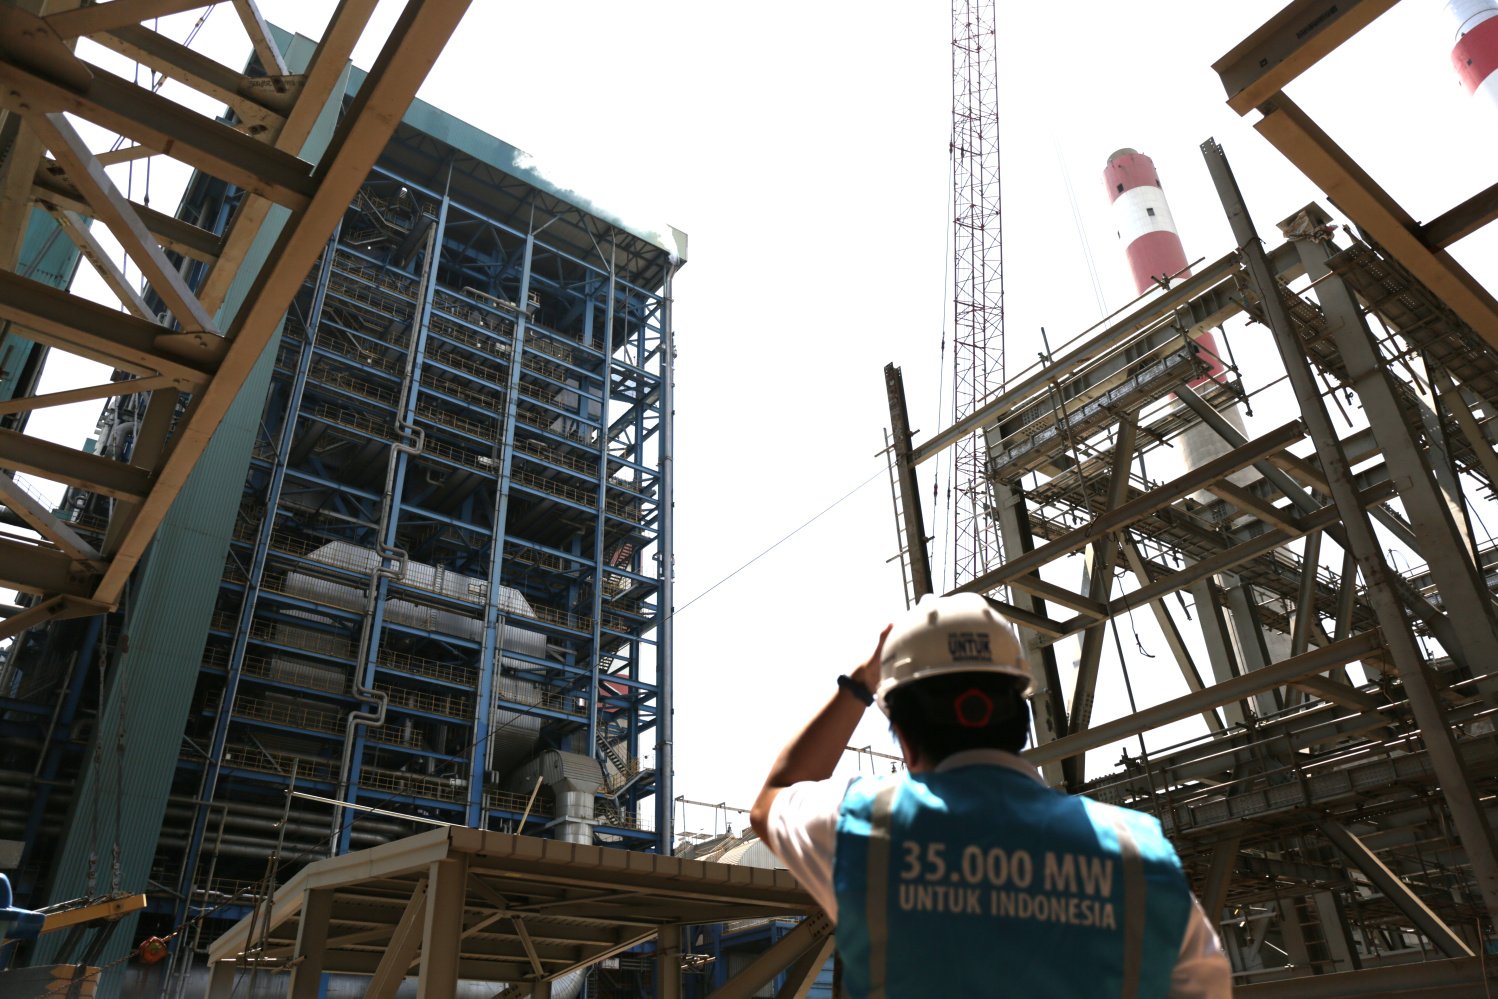 Pekerja proyek program 35.000 MW berdiri di lokasi proyek PLTU Lontar, Balaraja, Banten (29/3). Pembangunan PLTU wilayah Jawa bagian barat mendapatkan kewajiban untuk membangun 5.700 MW dan 52% di antaranya telah memasukin masa konstruksi.
